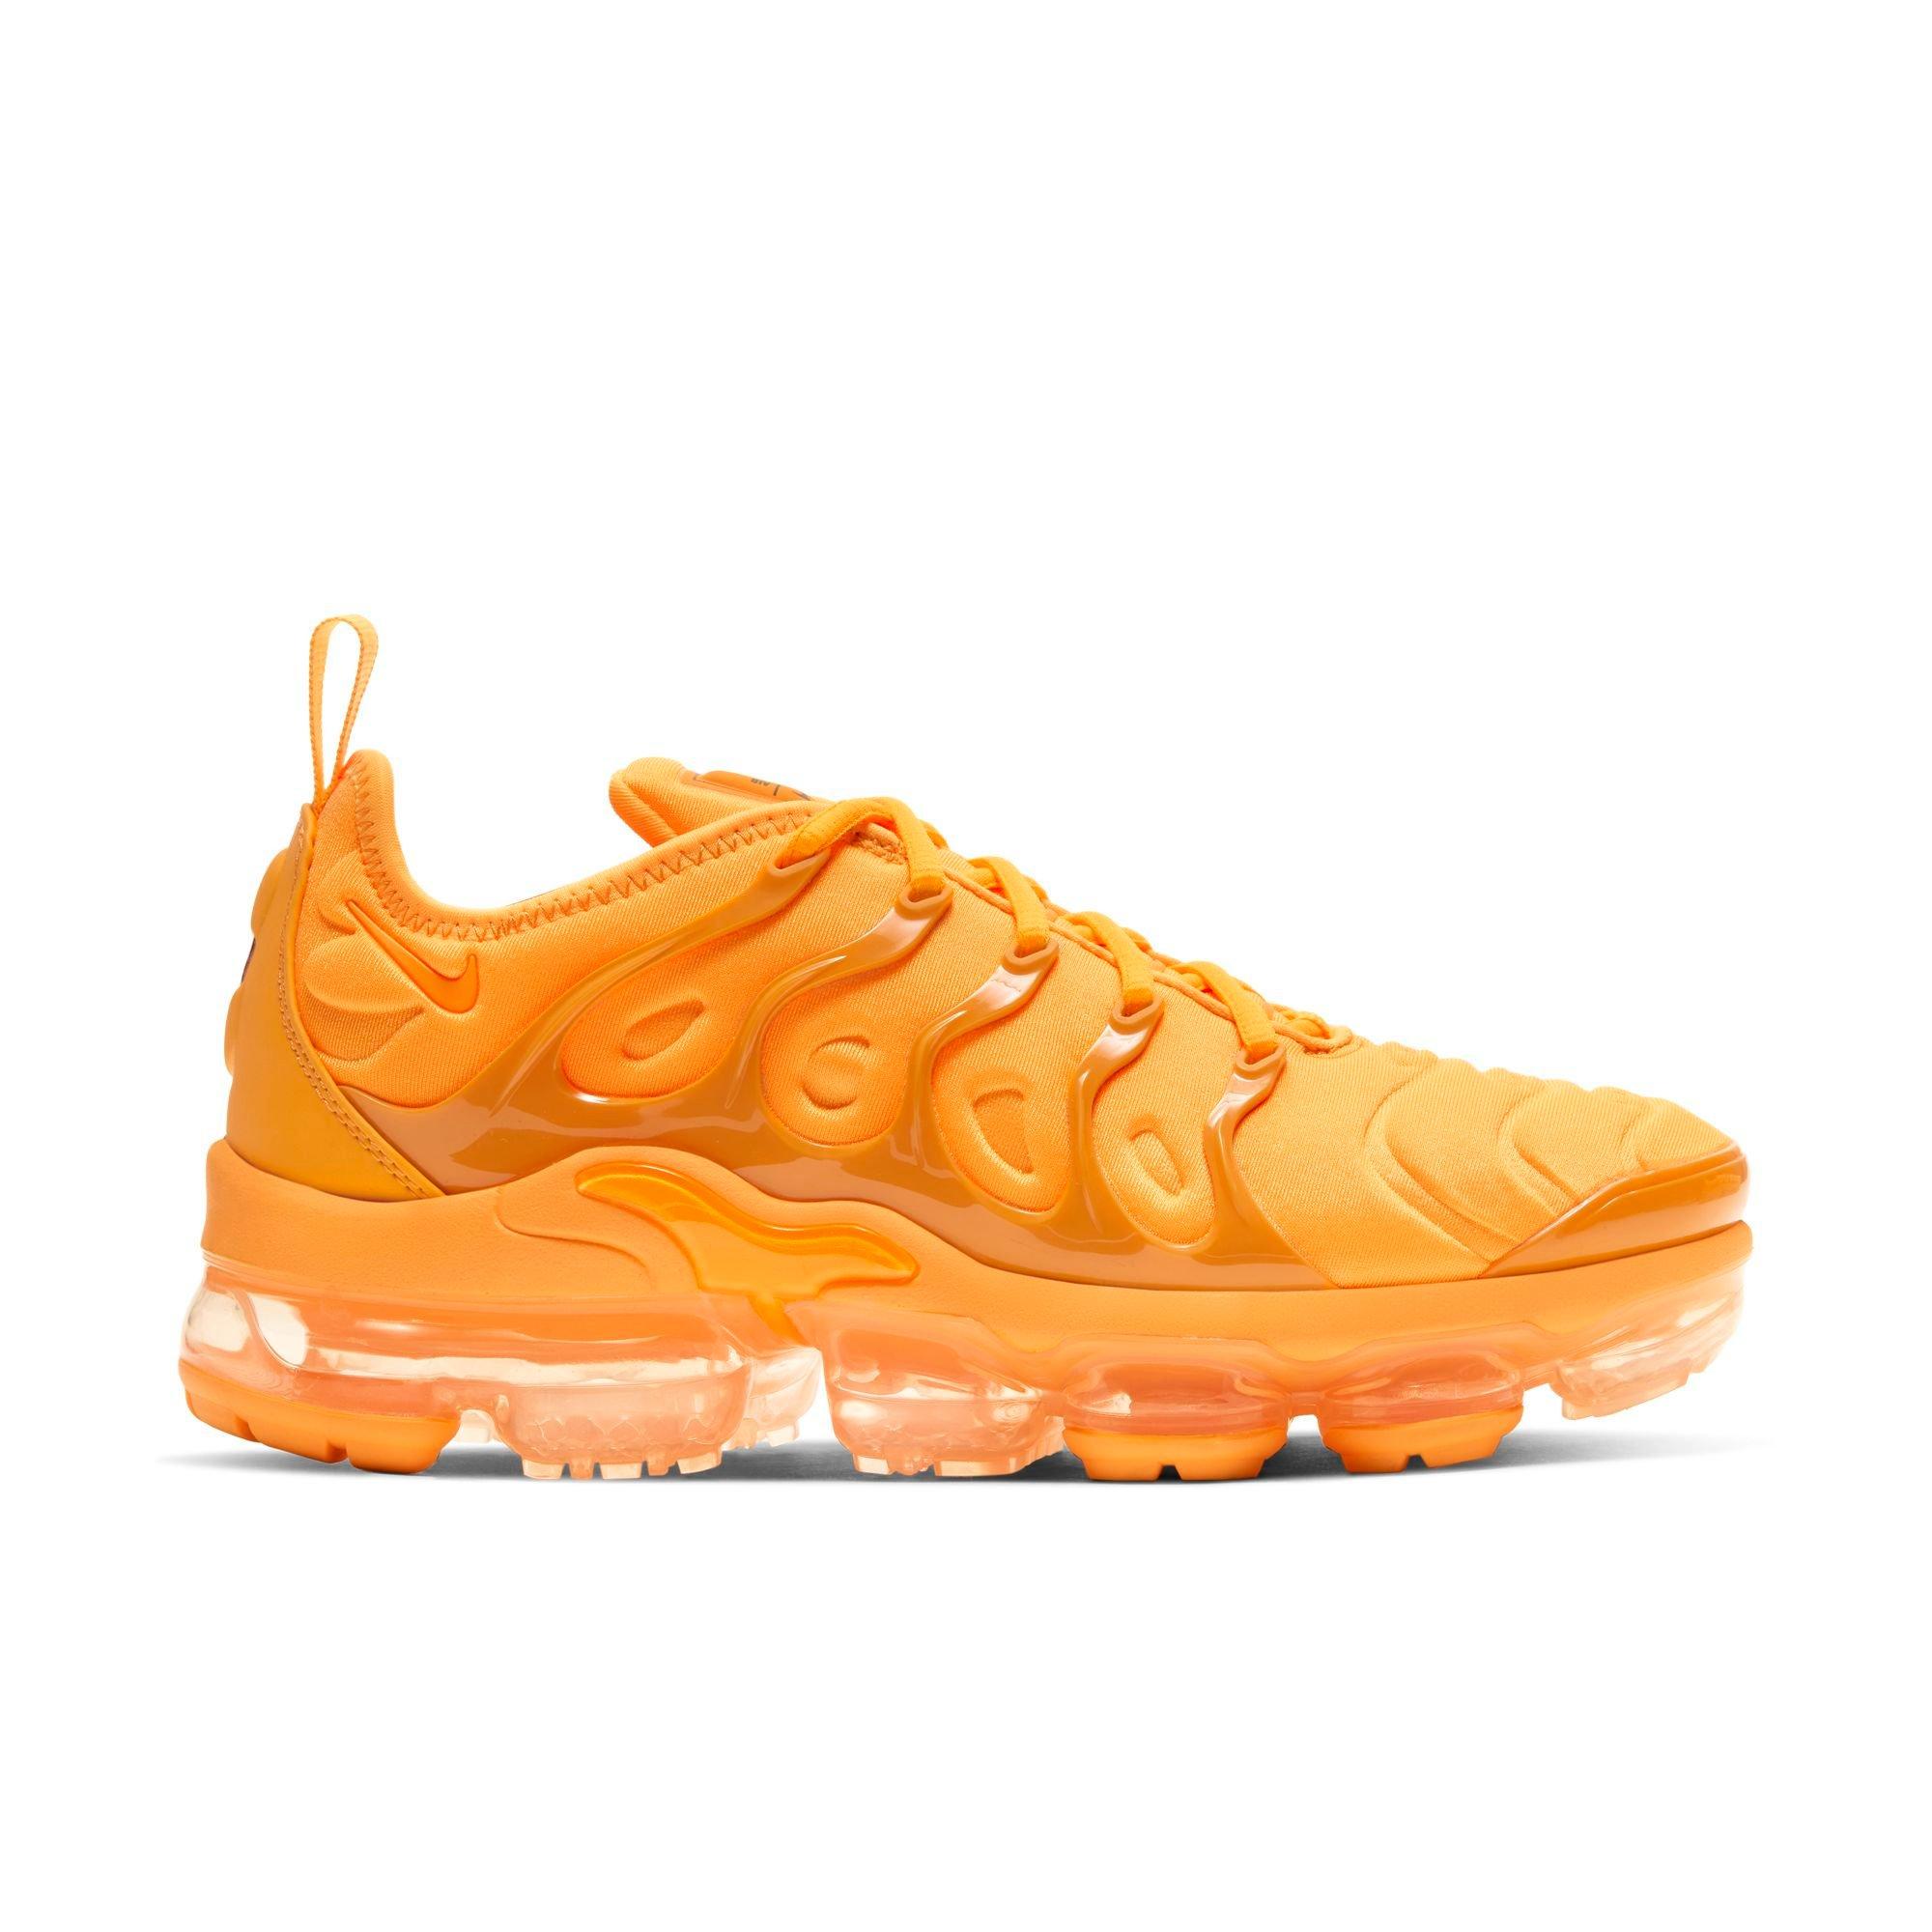 orange vapormax shoes